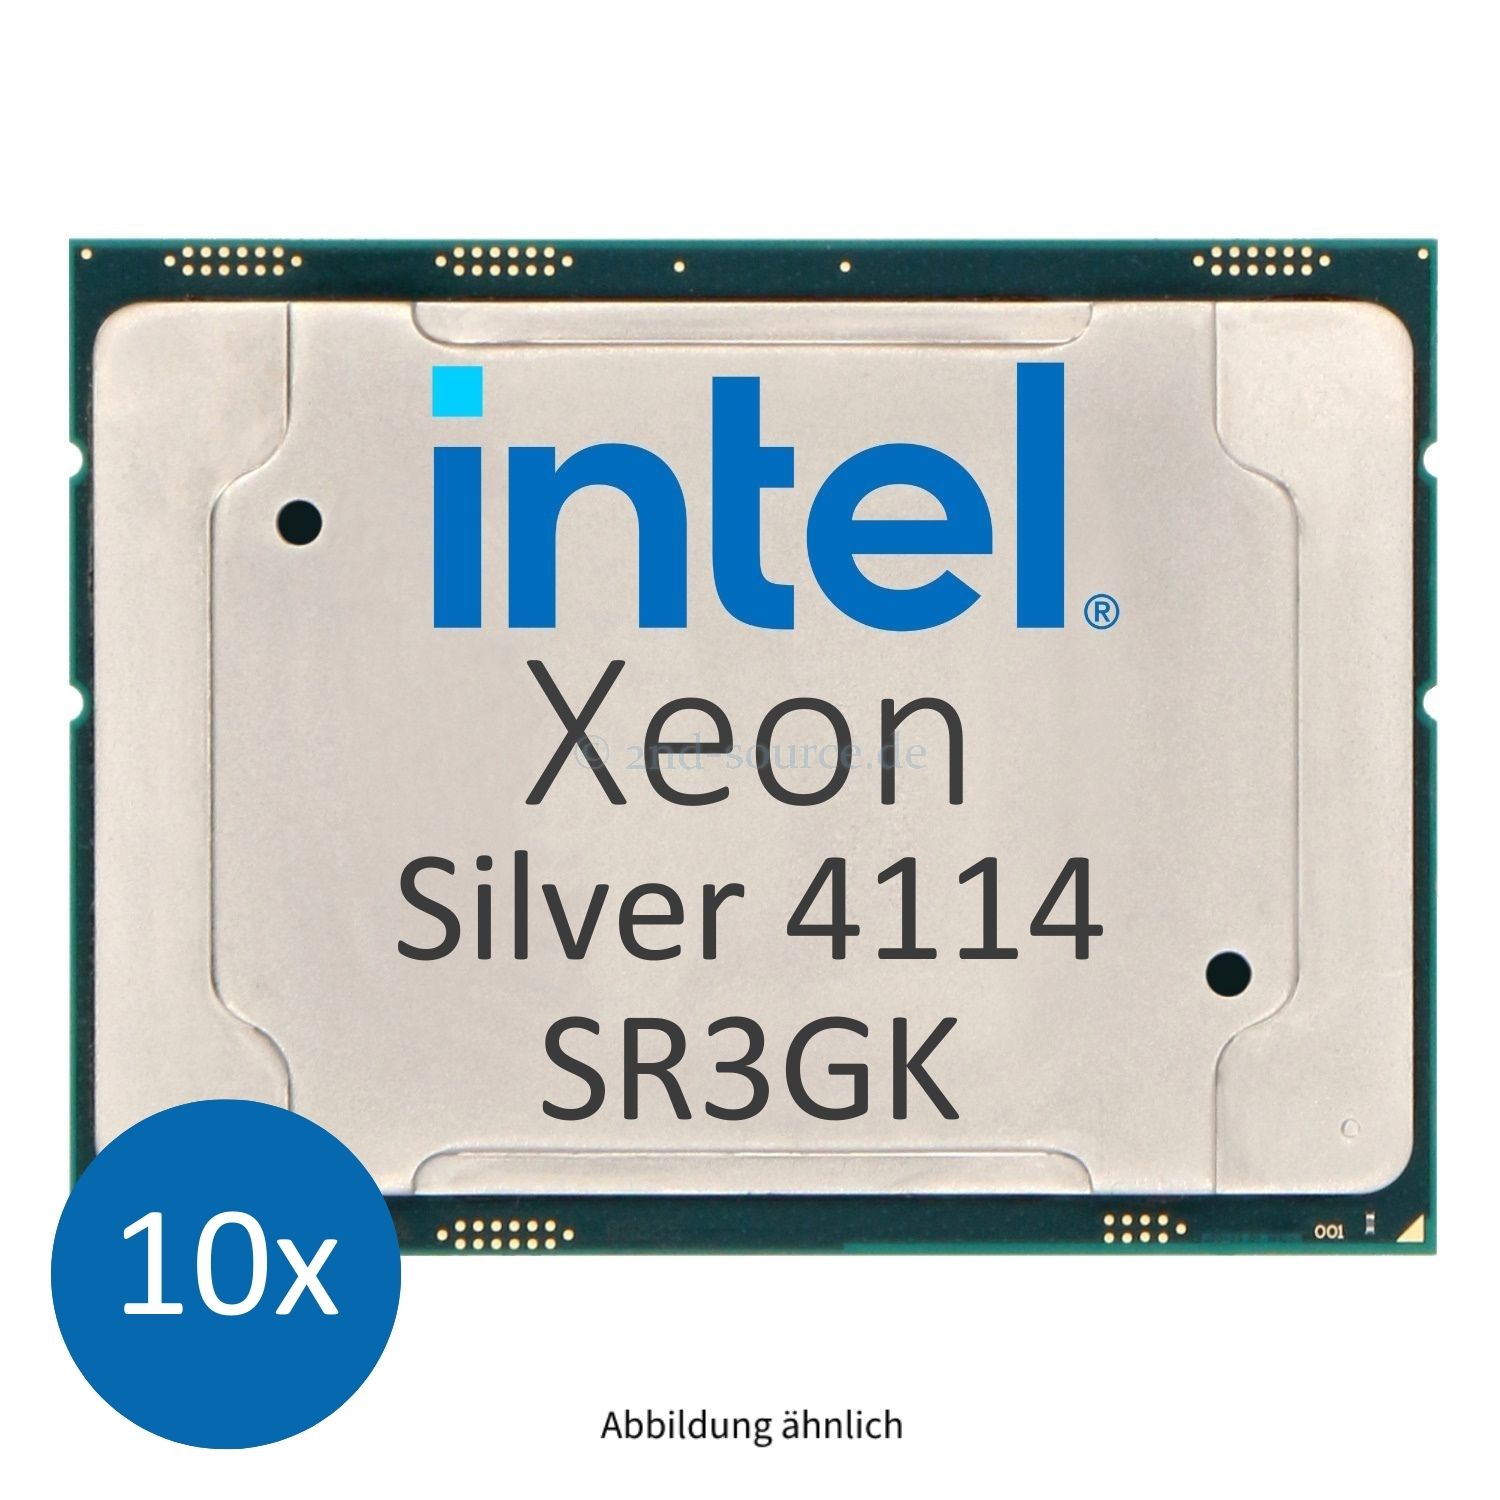 10x Intel Xeon Silver 4114 2.20GHz 13.75MB 10-Core CPU 85W SR3GK CD8067303561800